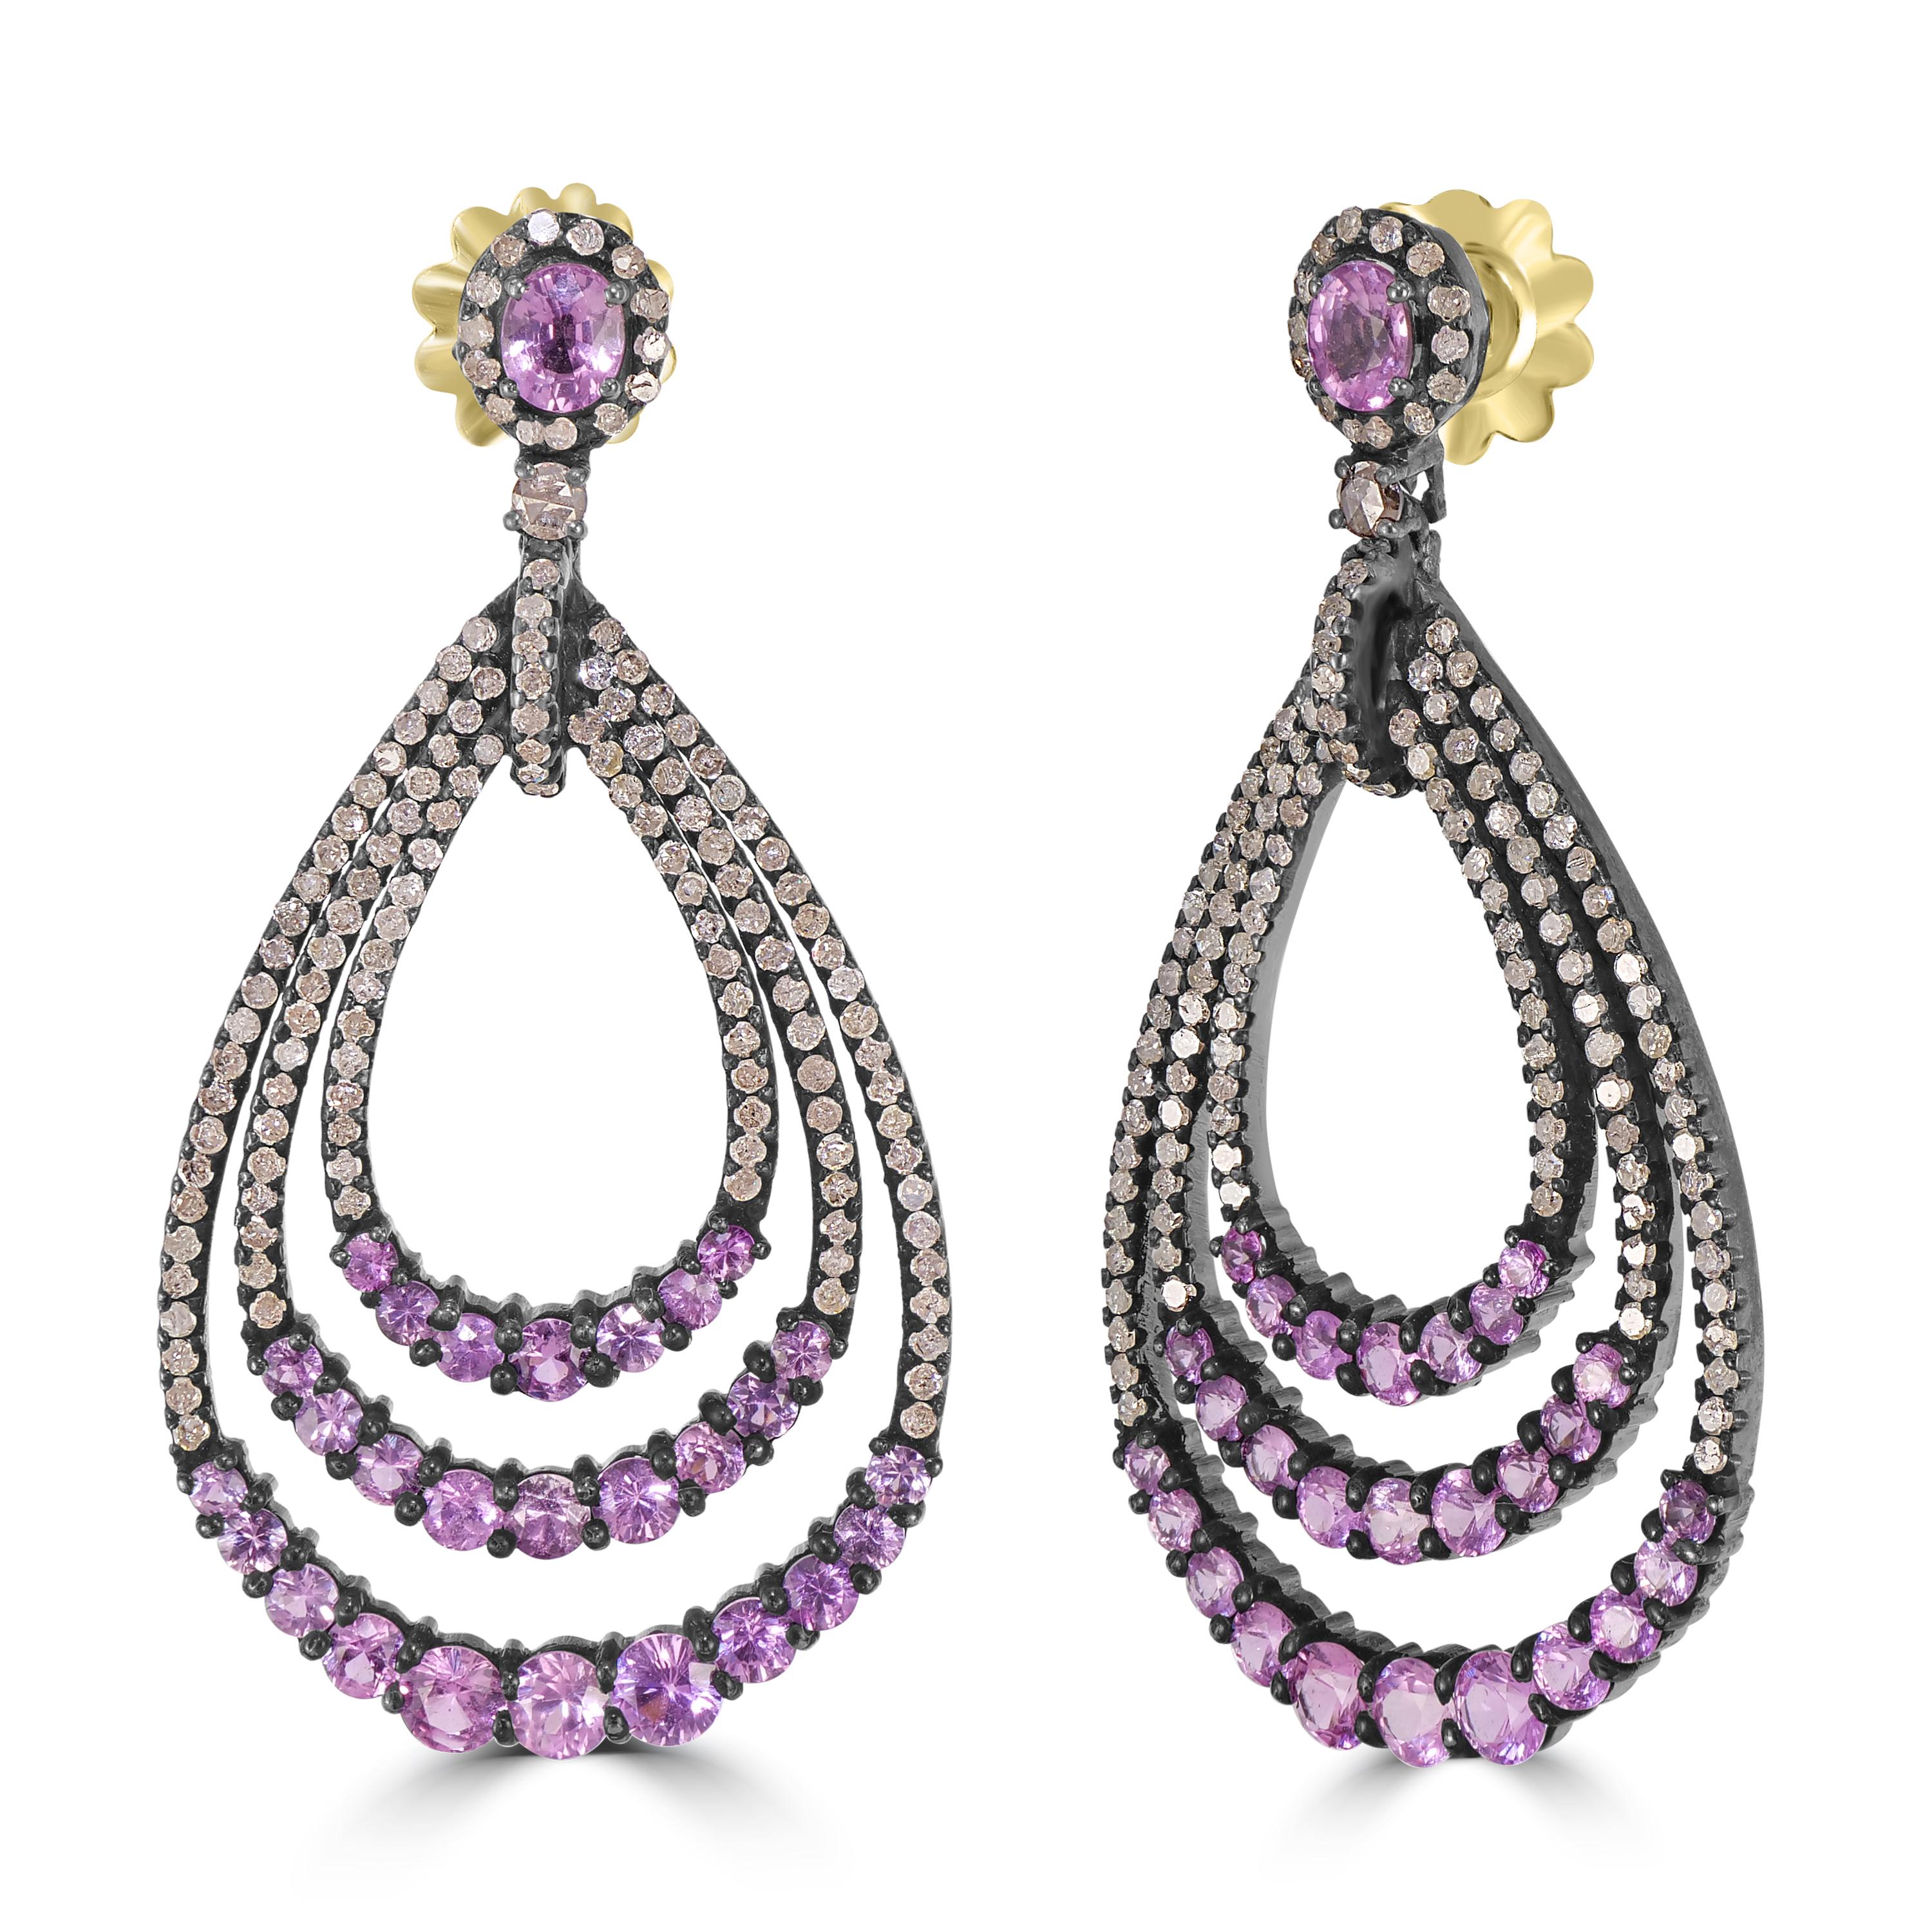 Wir präsentieren unseren viktorianischen 9.83 Cttw. Die Teardrop-Ohrringe mit rosa Saphiren und Diamanten sind ein schillerndes Zeugnis von Eleganz und Raffinesse.

Diese mit exquisiten Details gefertigten Ohrringe bestechen durch ihr